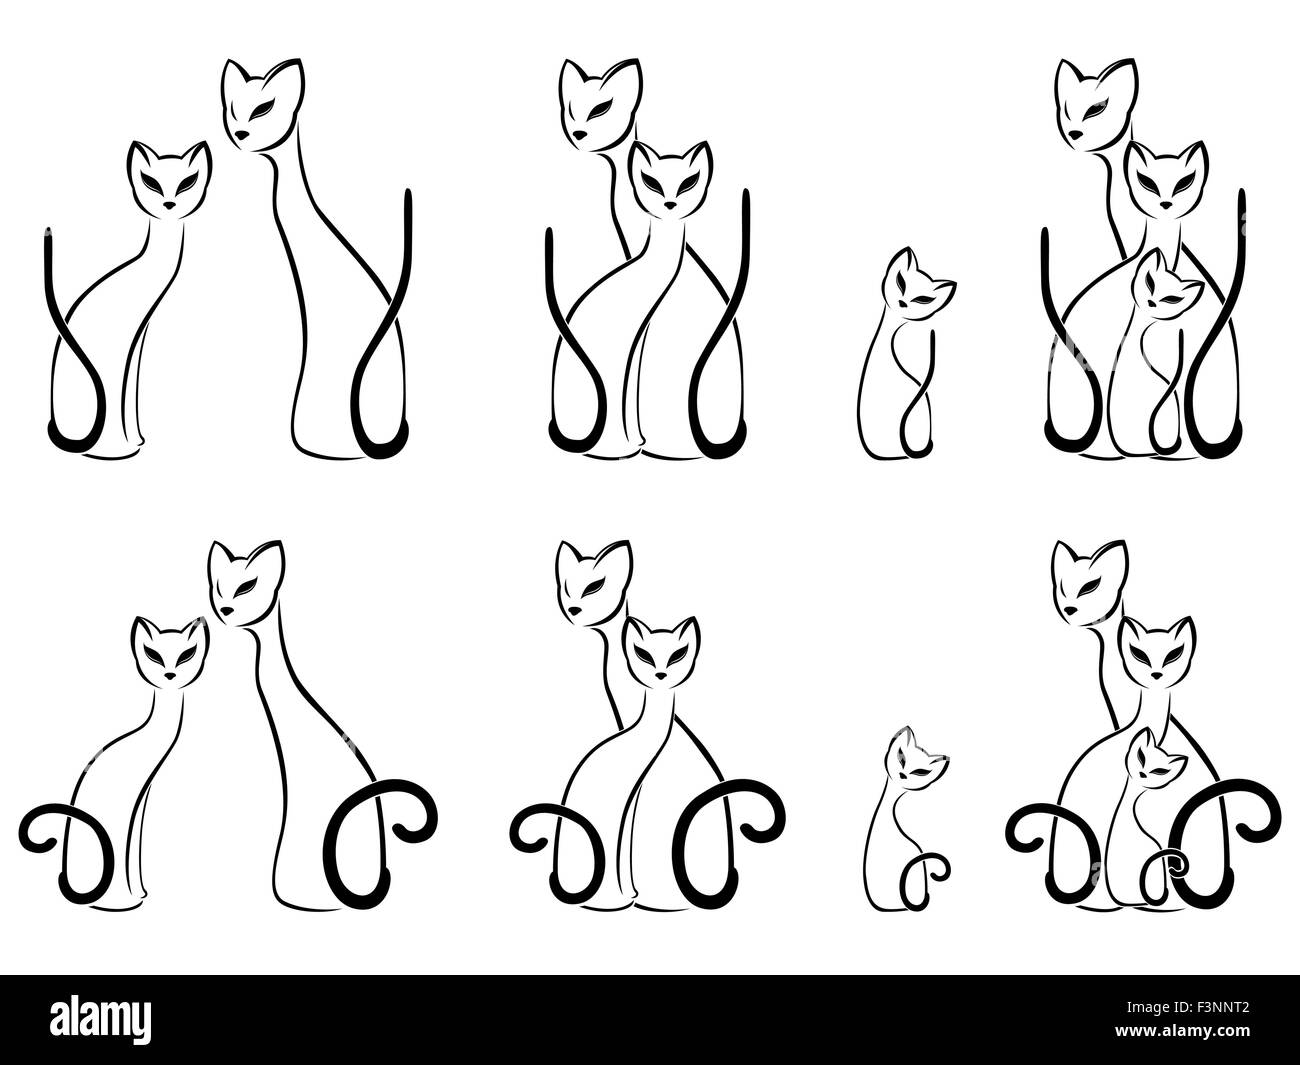 Satz von Kontur Skizzen der Katze Familien, Cartoon-Vektor-Illustration auf weißem Hintergrund Stock Vektor